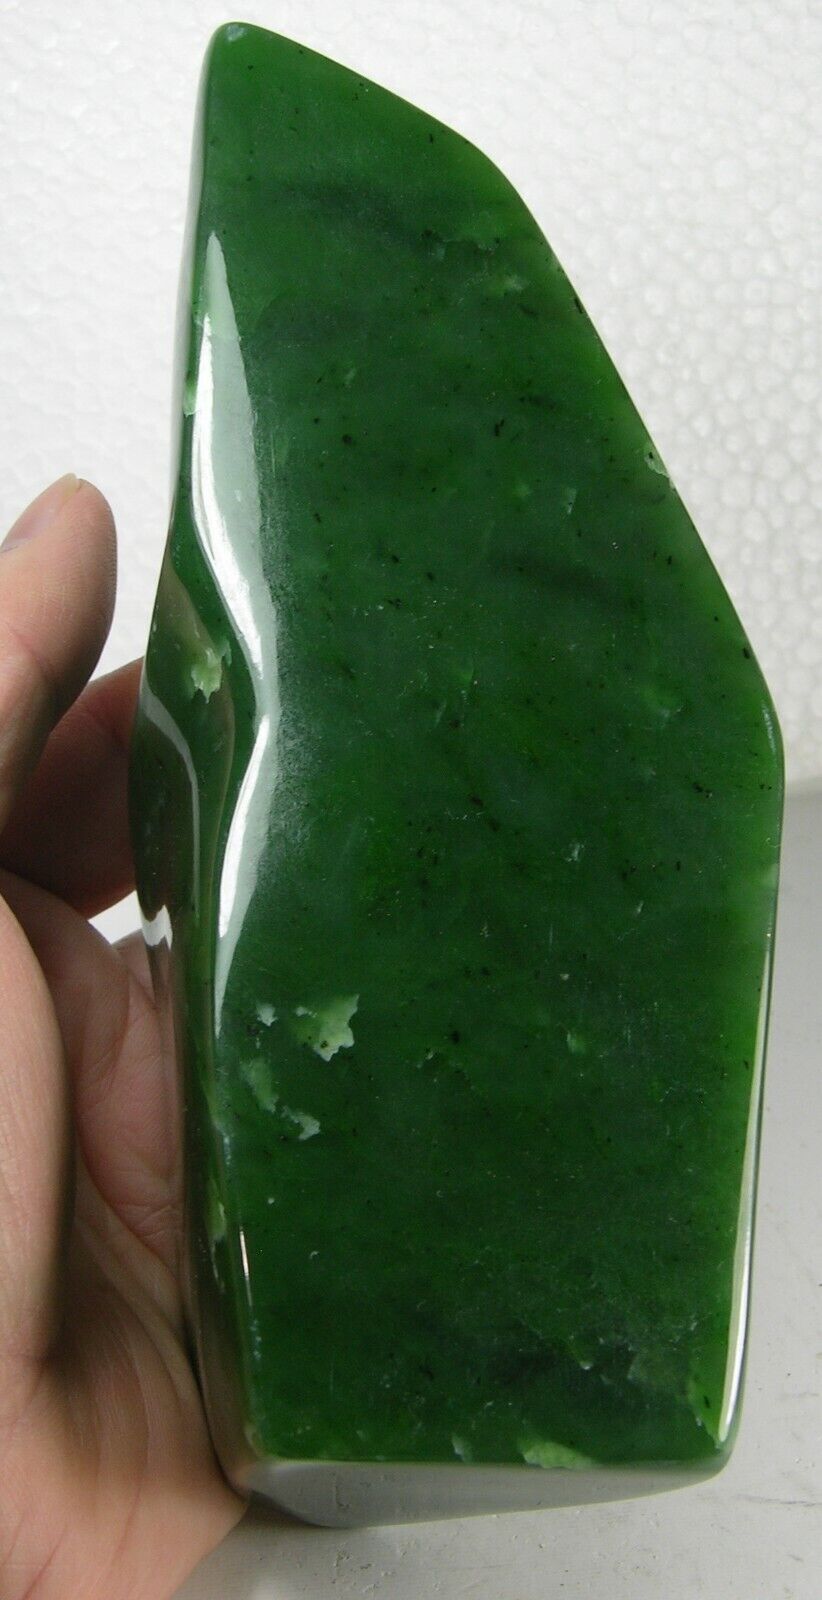 800g Russia 100% Natural Rough Green Jade Block Specimen 1 lb 12 1/4 oz 160mm